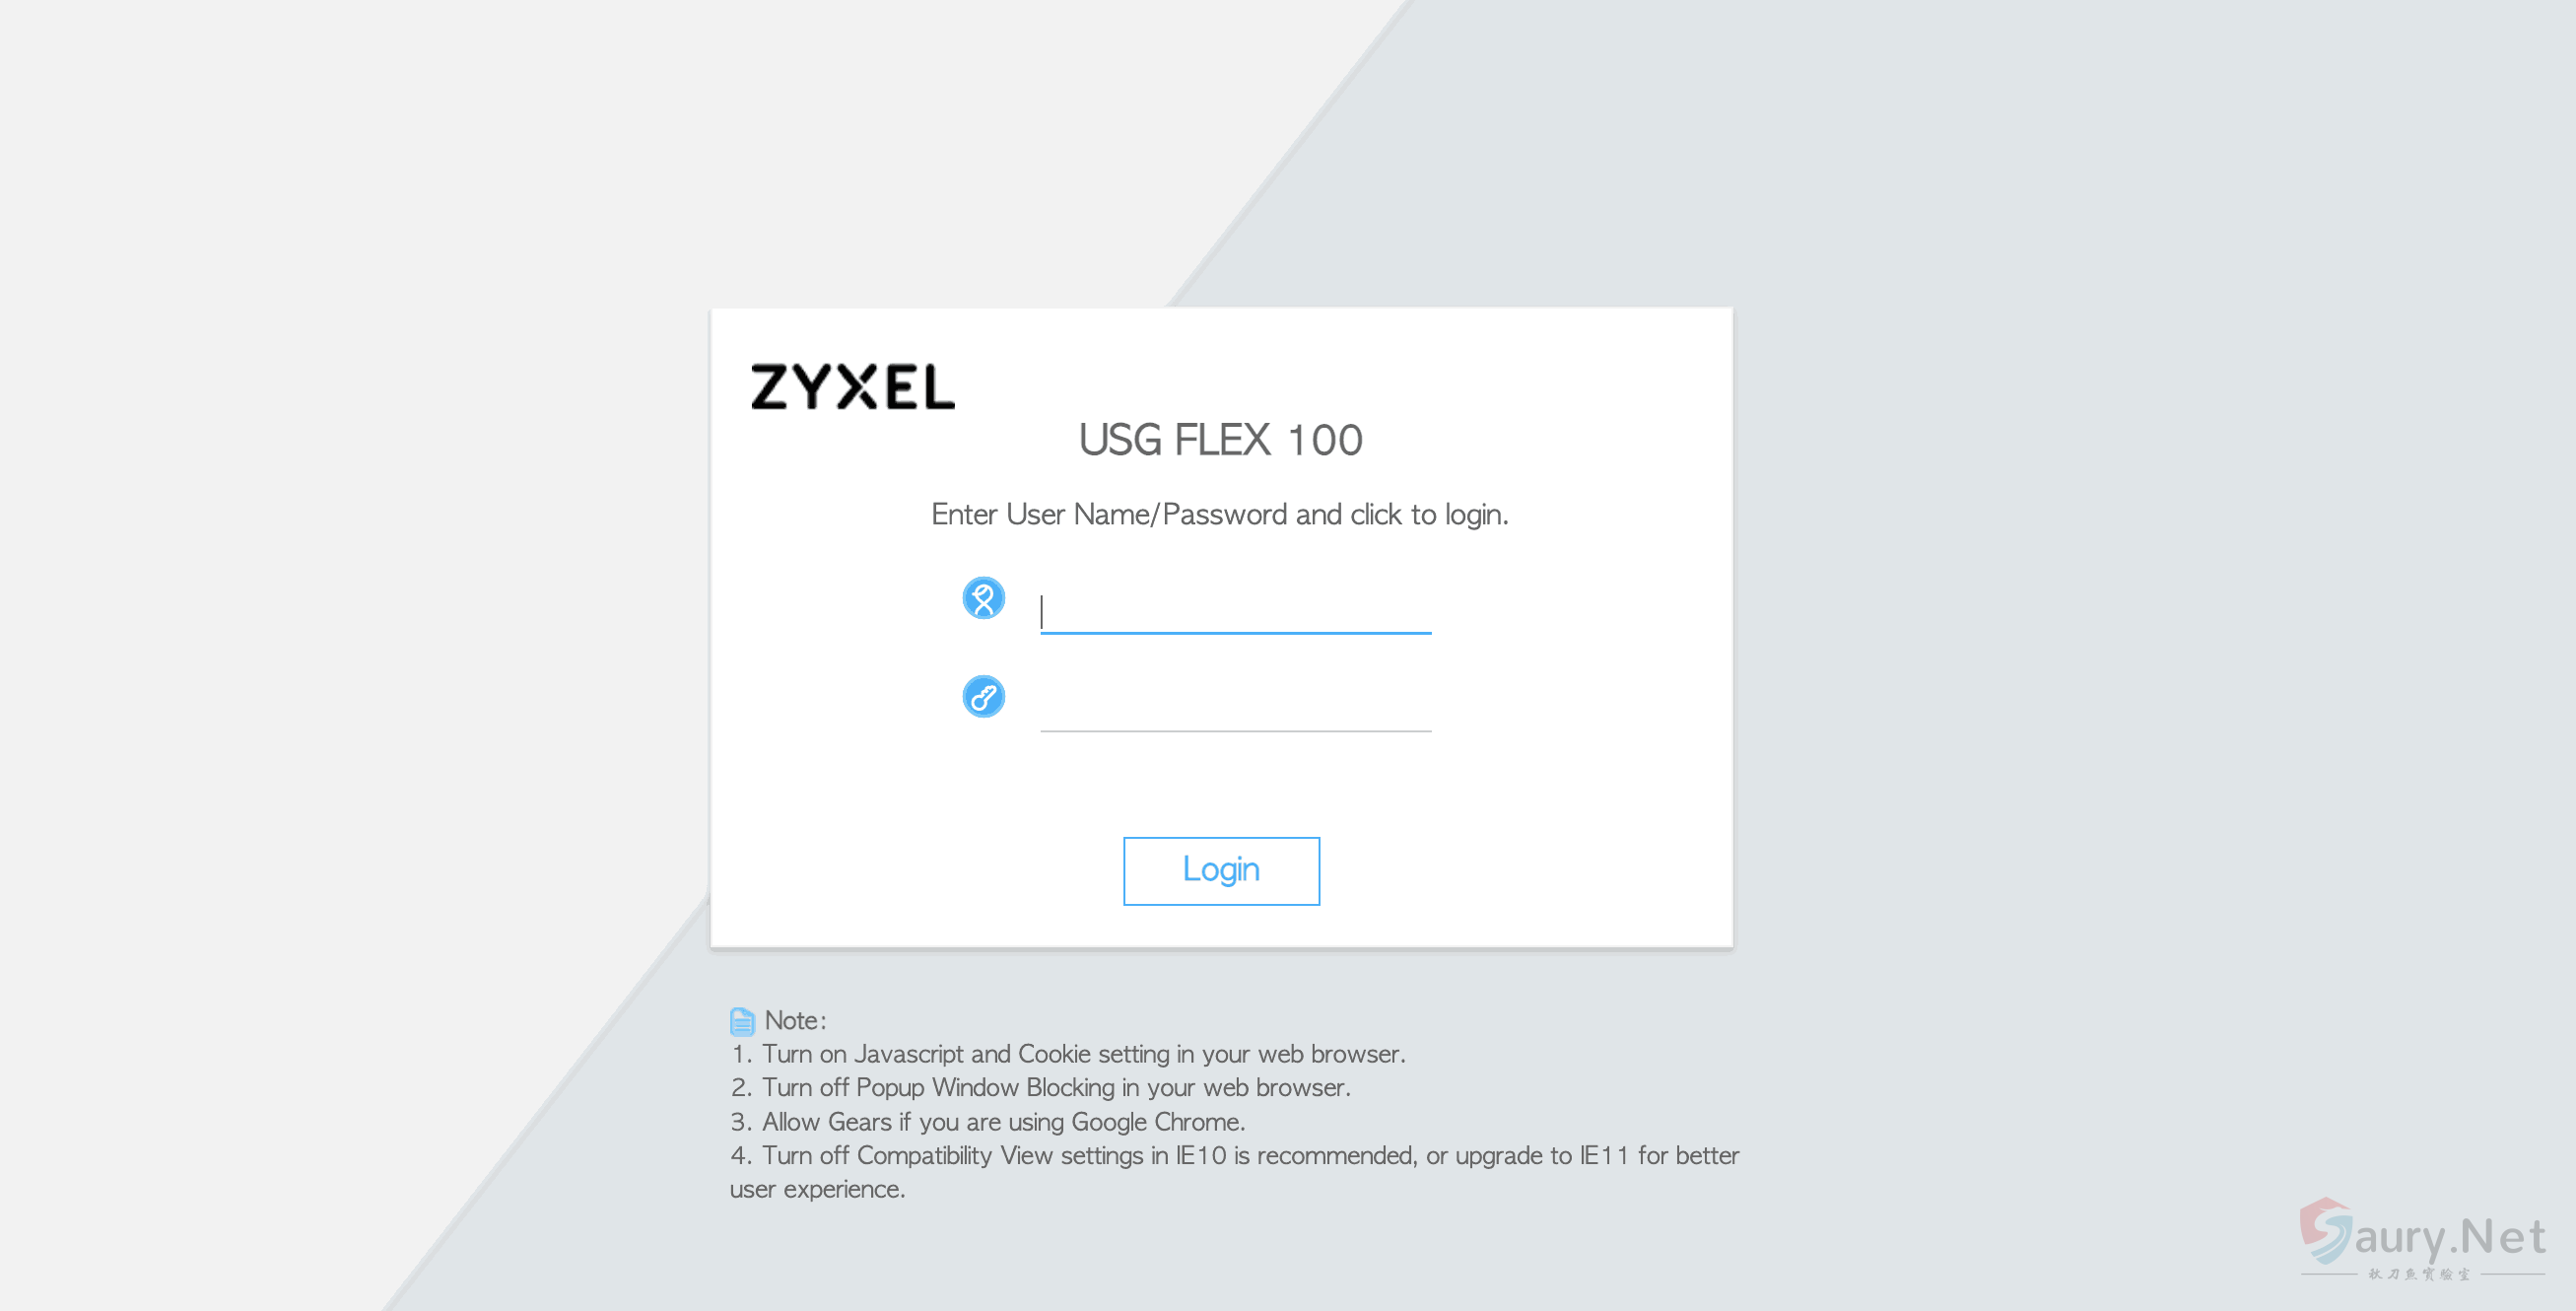 Zyxel USG FLEX handler 远程命令执行漏洞 #CVE-2022-30525-秋刀鱼实验室